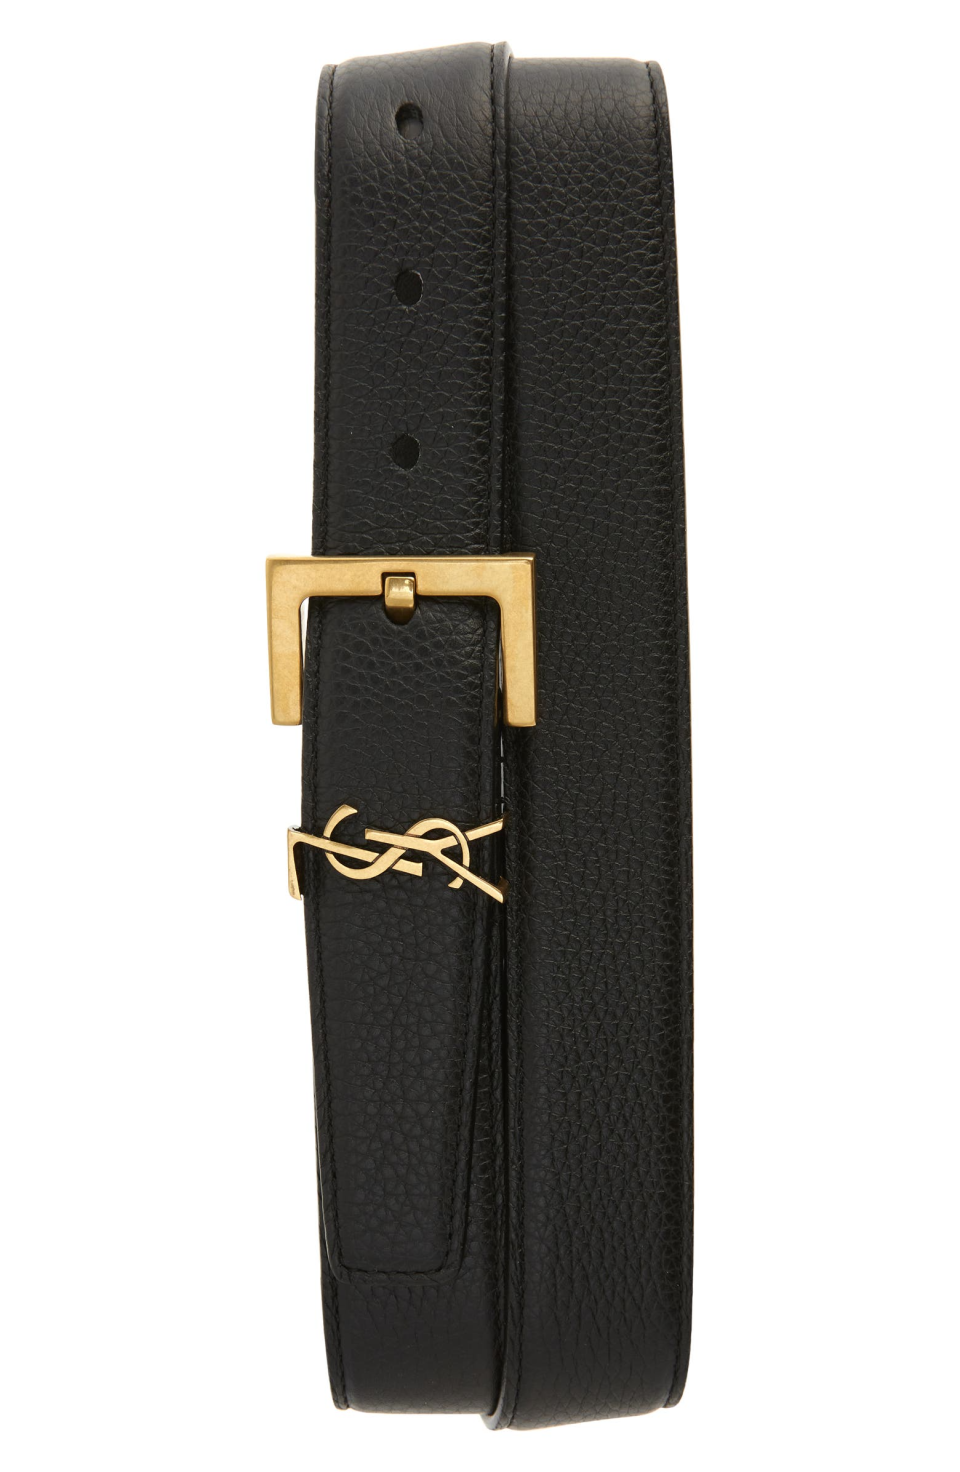 Saint Laurent Monogram Keeper Leather Belt